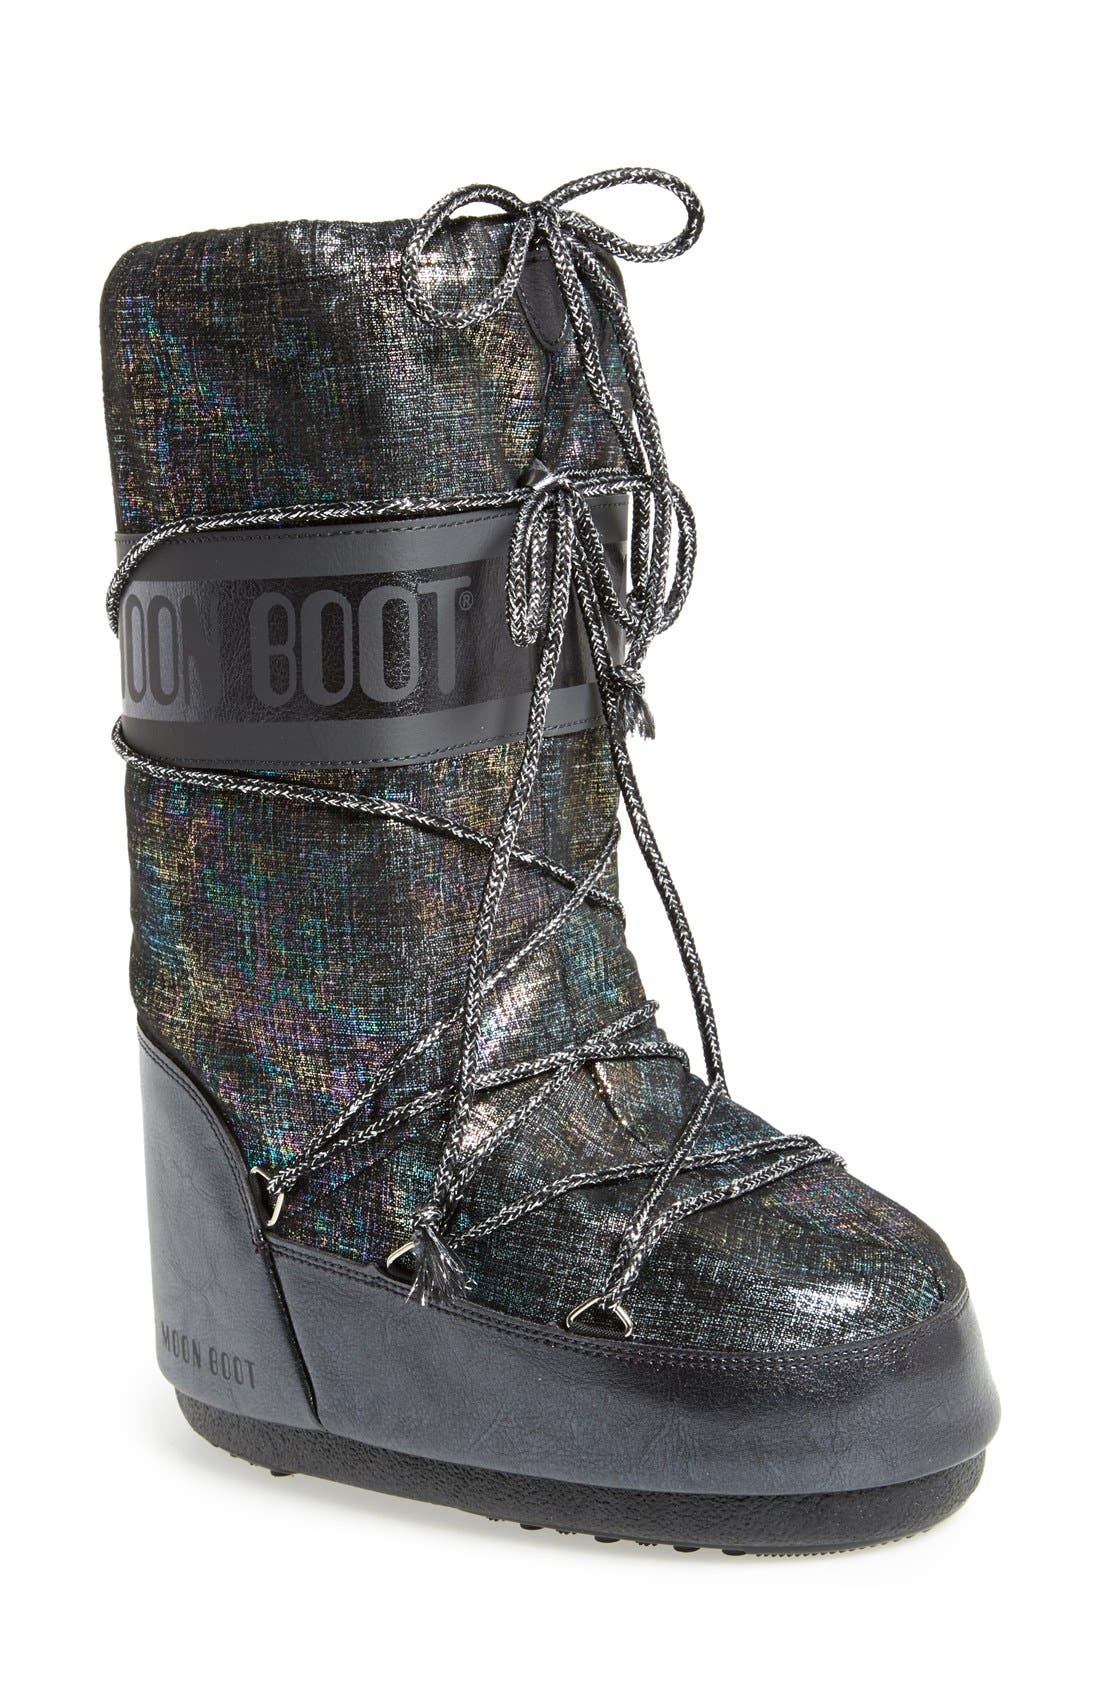 shiny moon boots